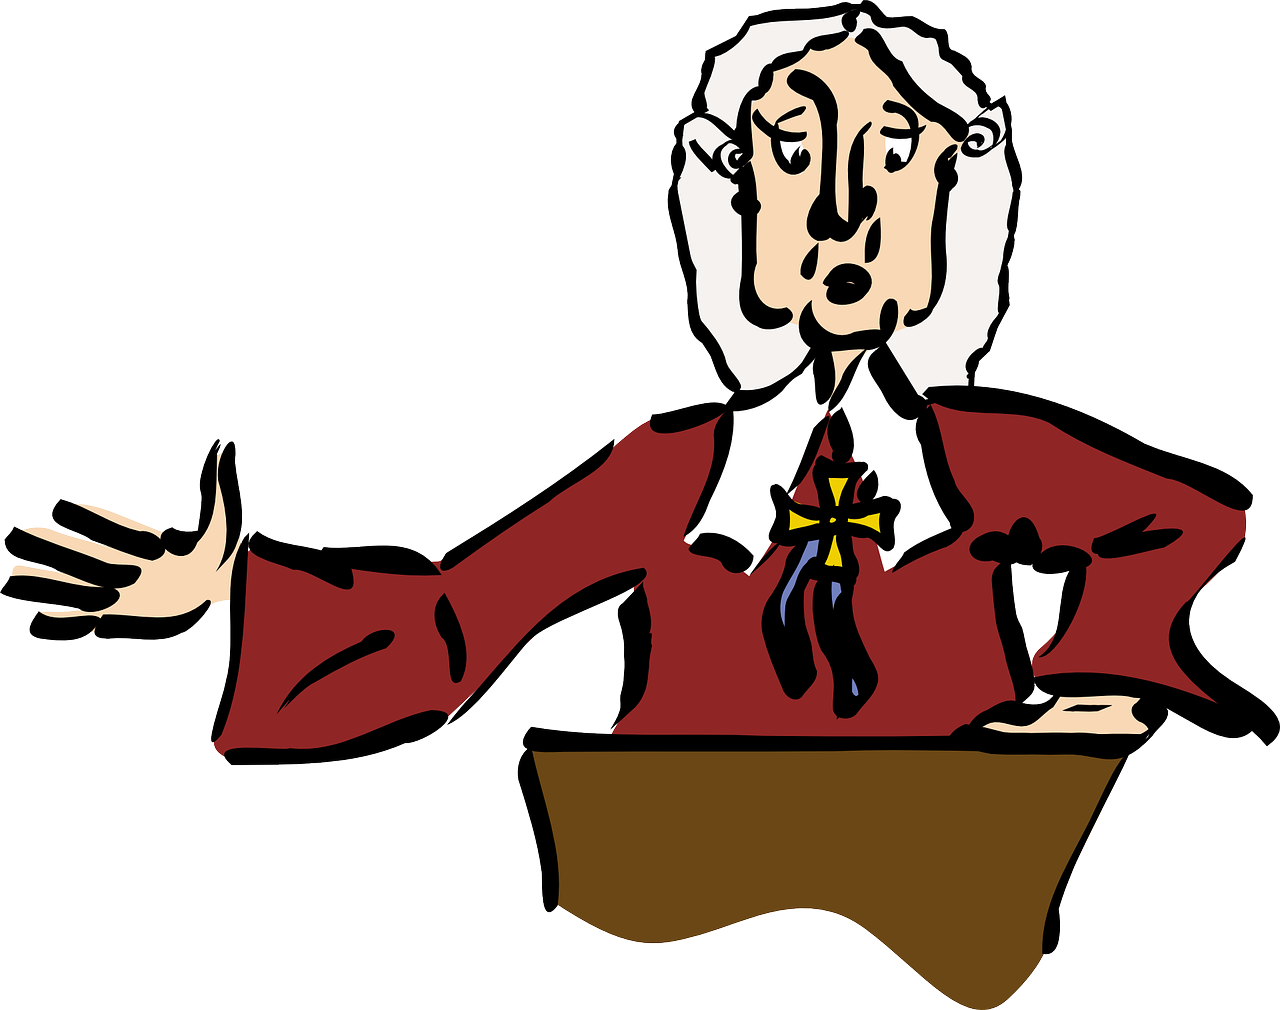 A Cartoon Of A Judge